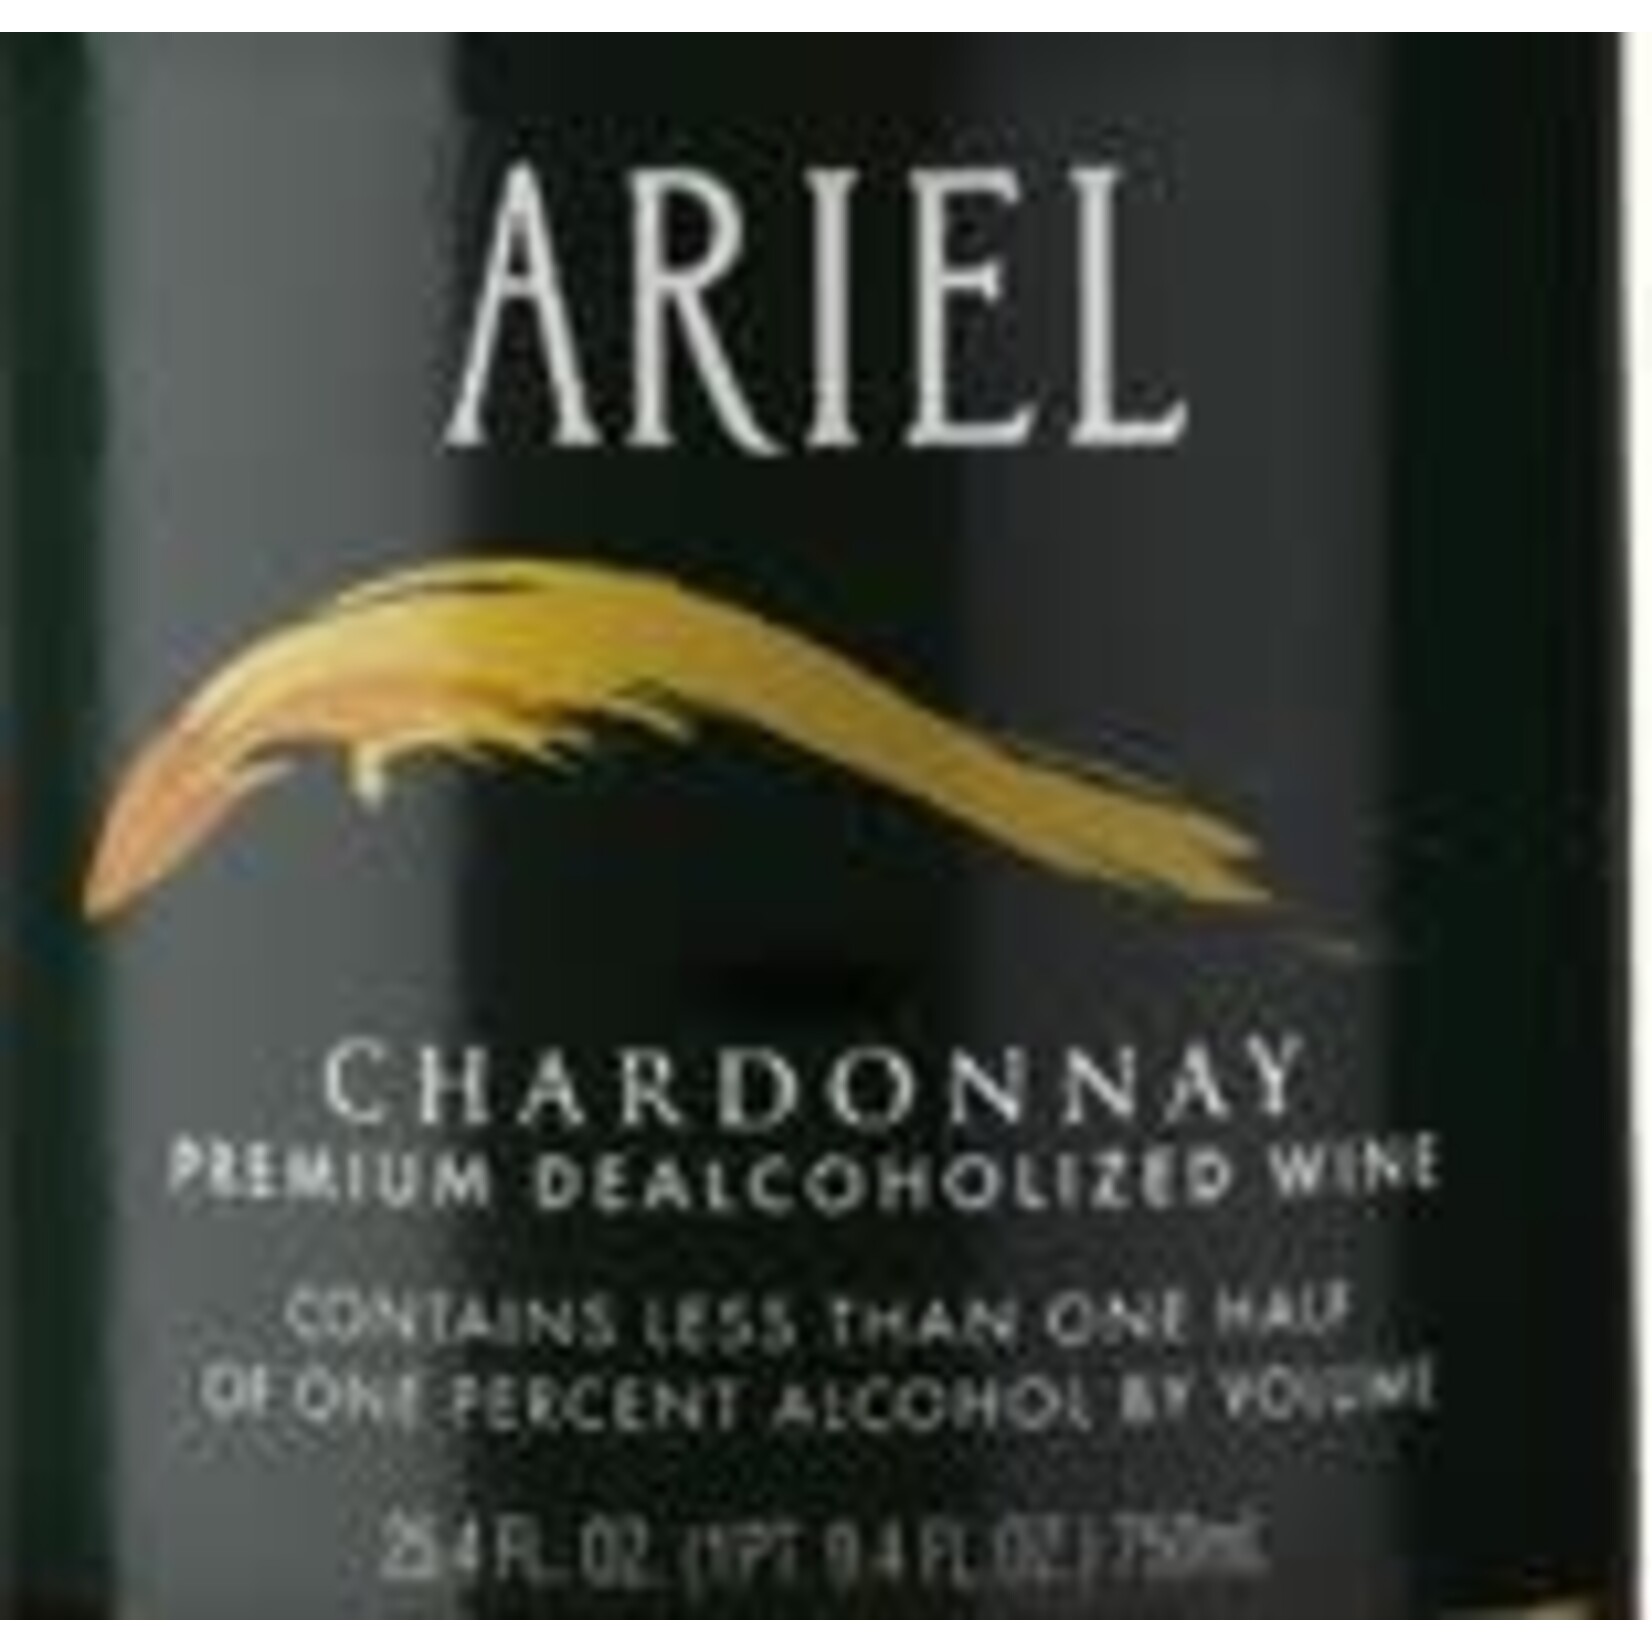 Ariel Ariel Chardonnay Premium Dealcoholized Wine 2021 Less than .05%